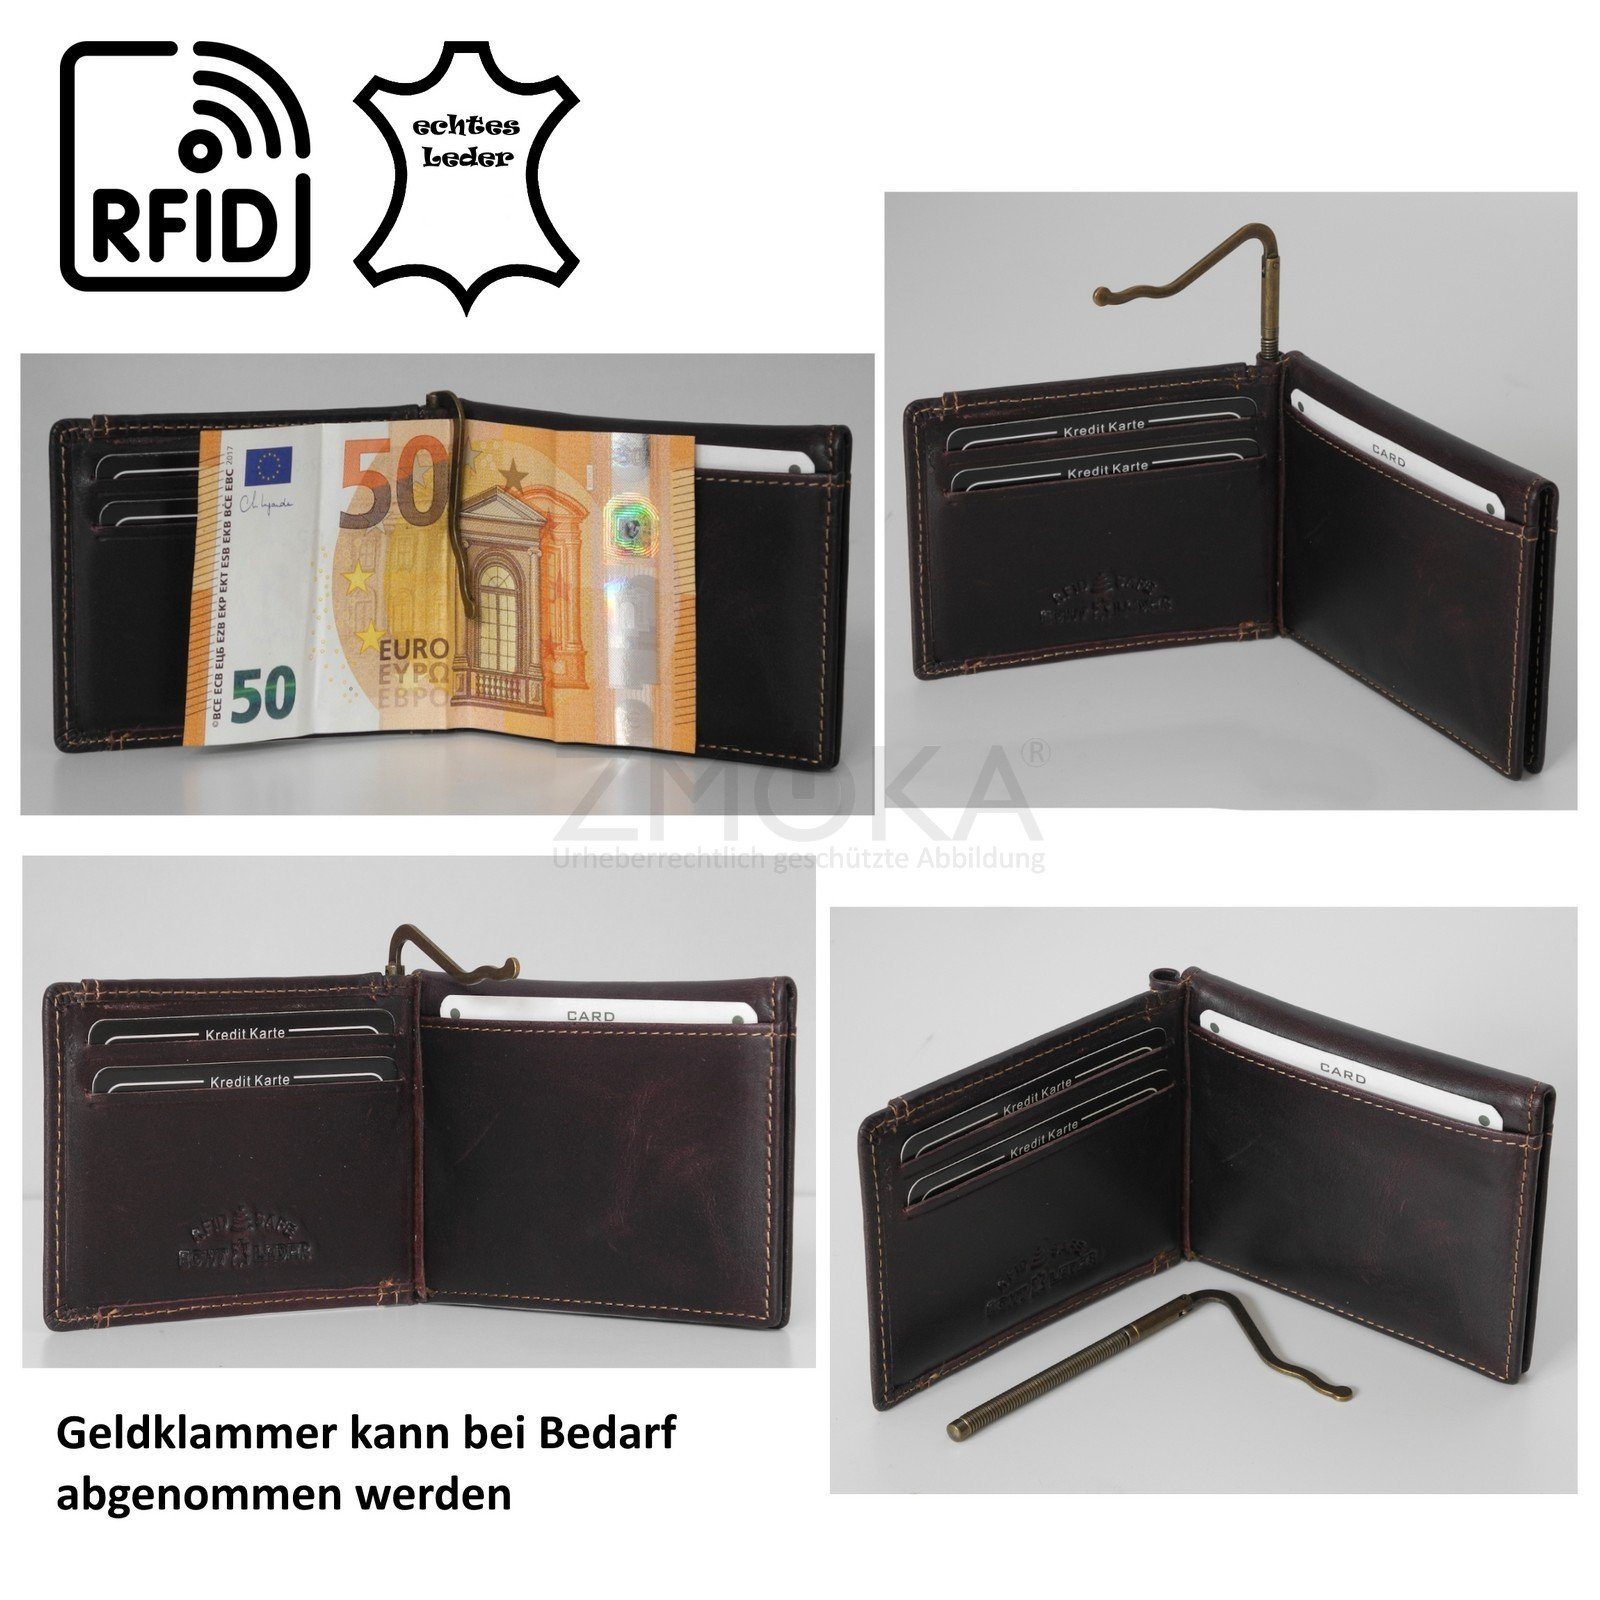 Only Wild RFID Things Braun Geldklammer Only Leder Wild !!! - Auswahl safe Things Geldbörse Geldbörse